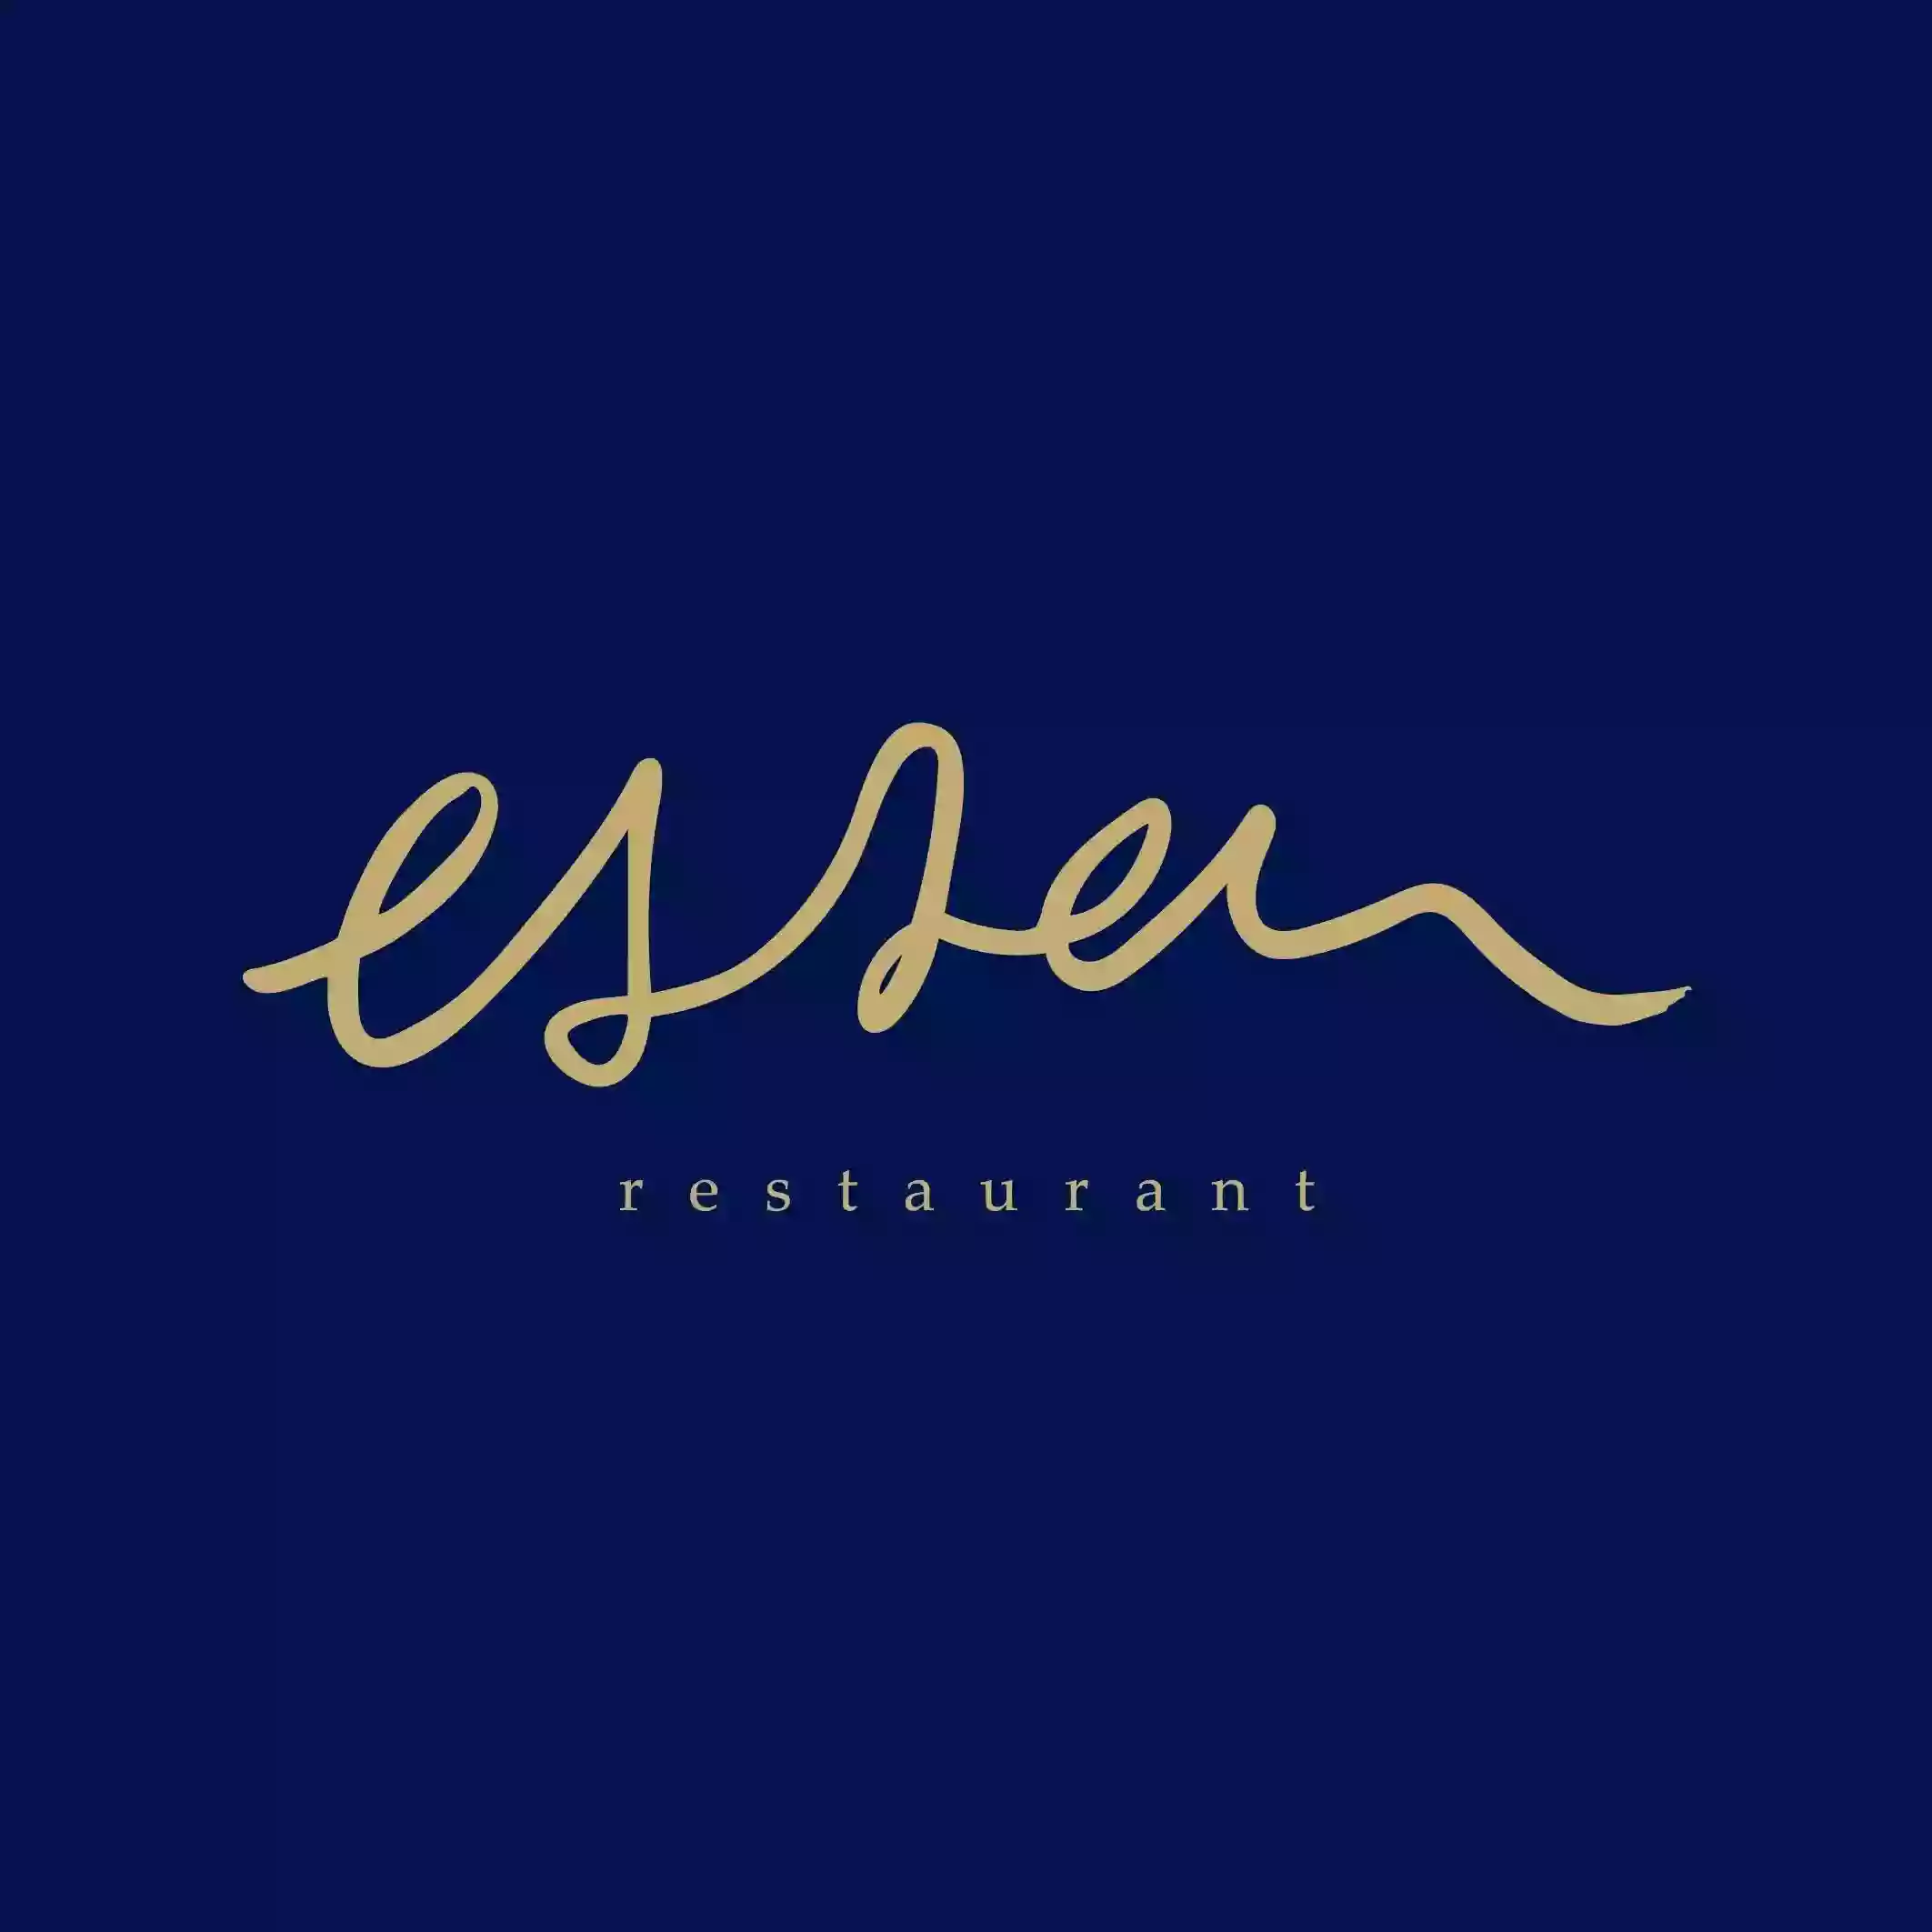 Essen Restaurant